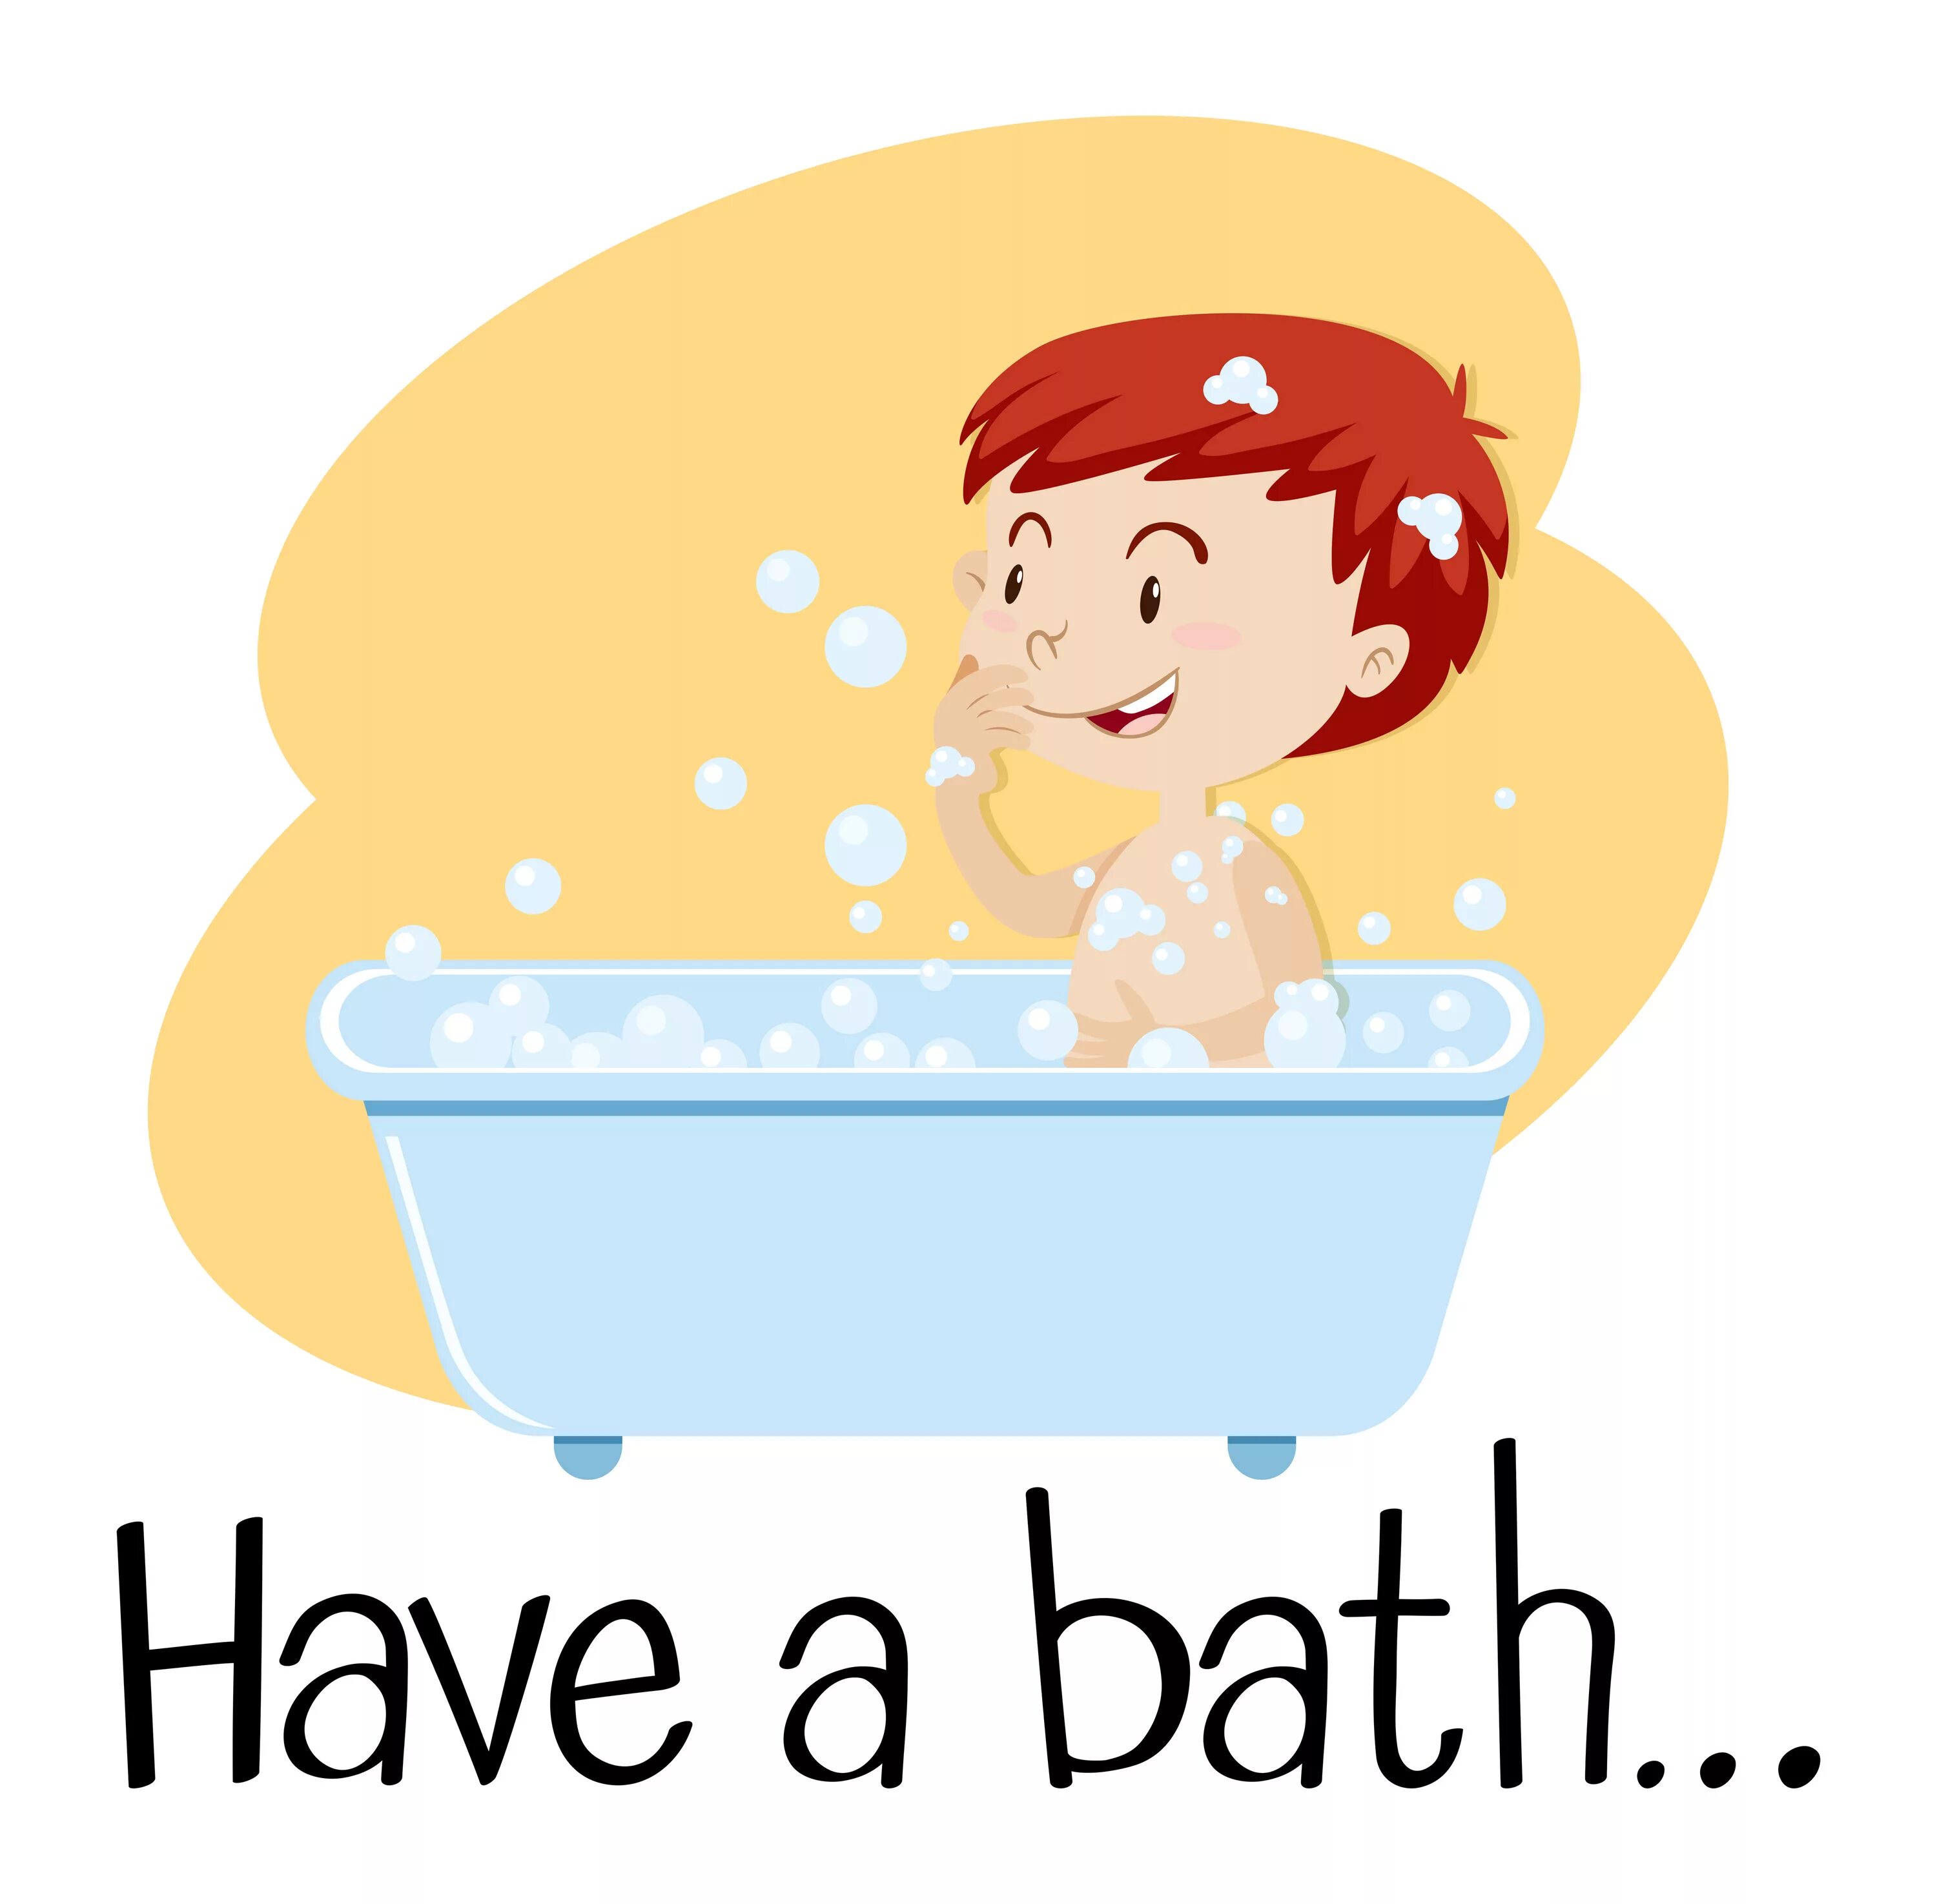 He has a bath. Картинки для детейhave a bat. Мальчик моется в ванной. Take a Bath child вектор. Bath картинка для детей.